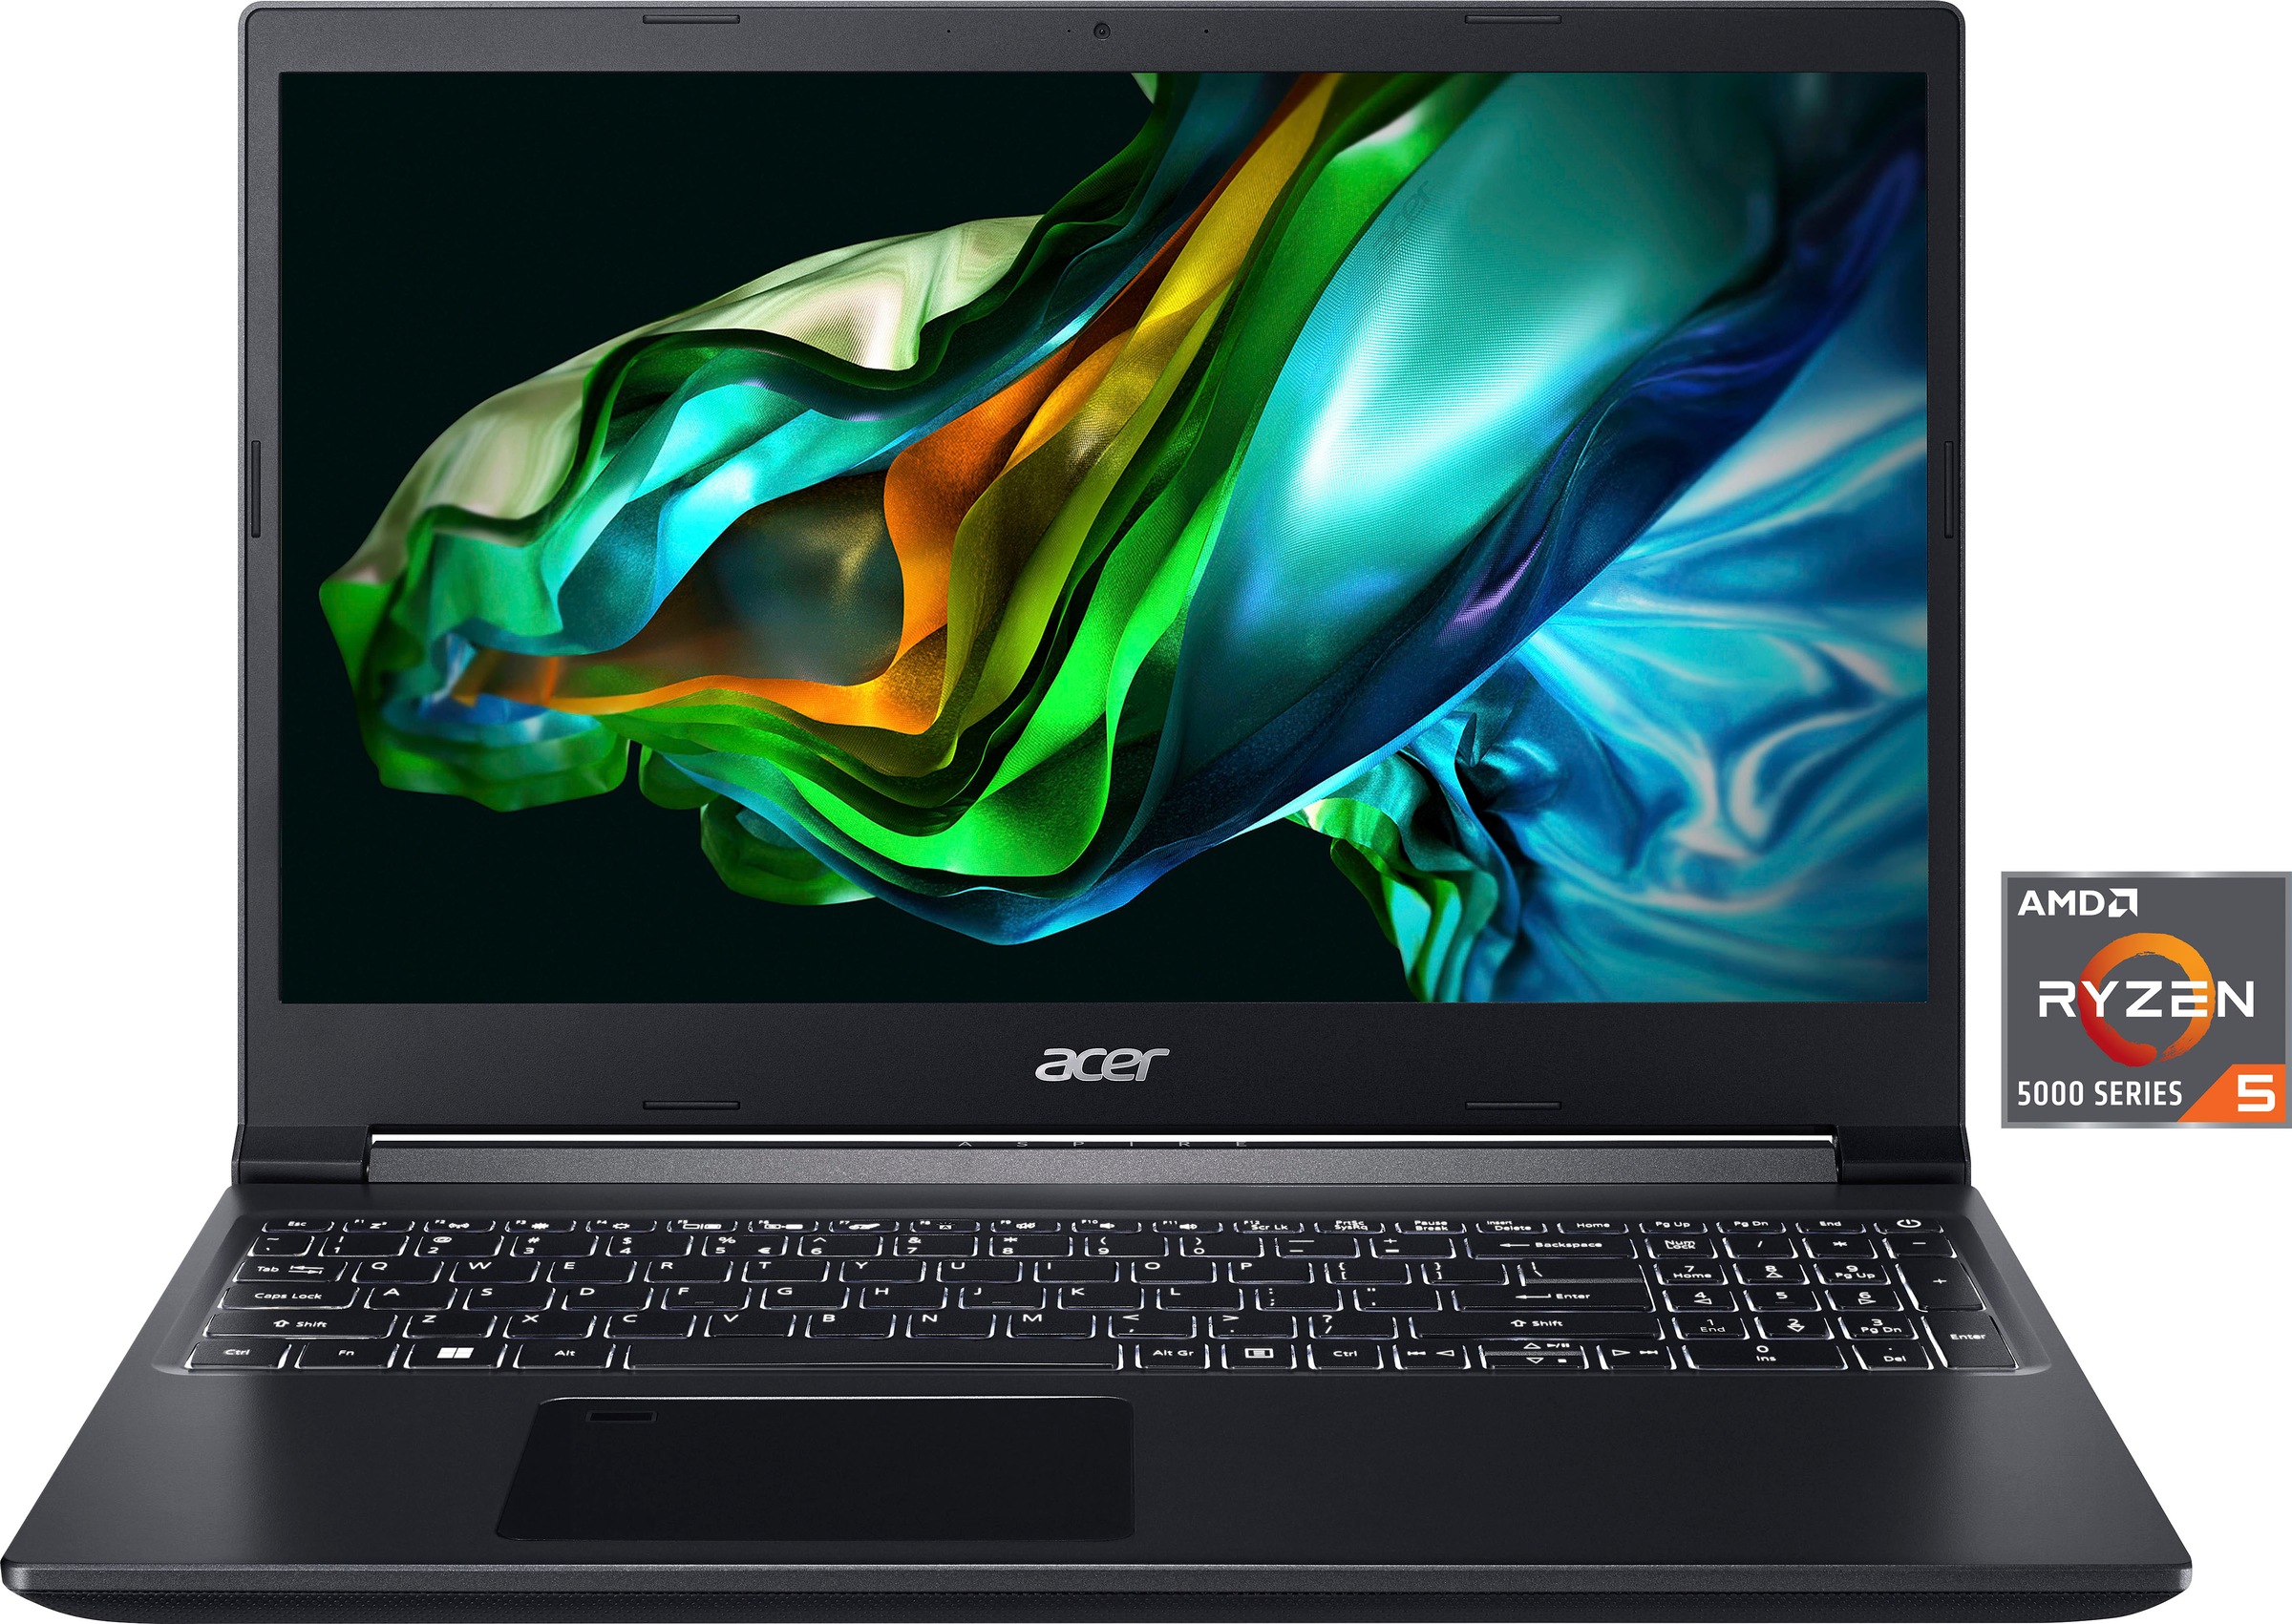 Bekannte internationale Marken Acer Online Shop ▷ Ratenkauf und Rechnungs- BAUR | per